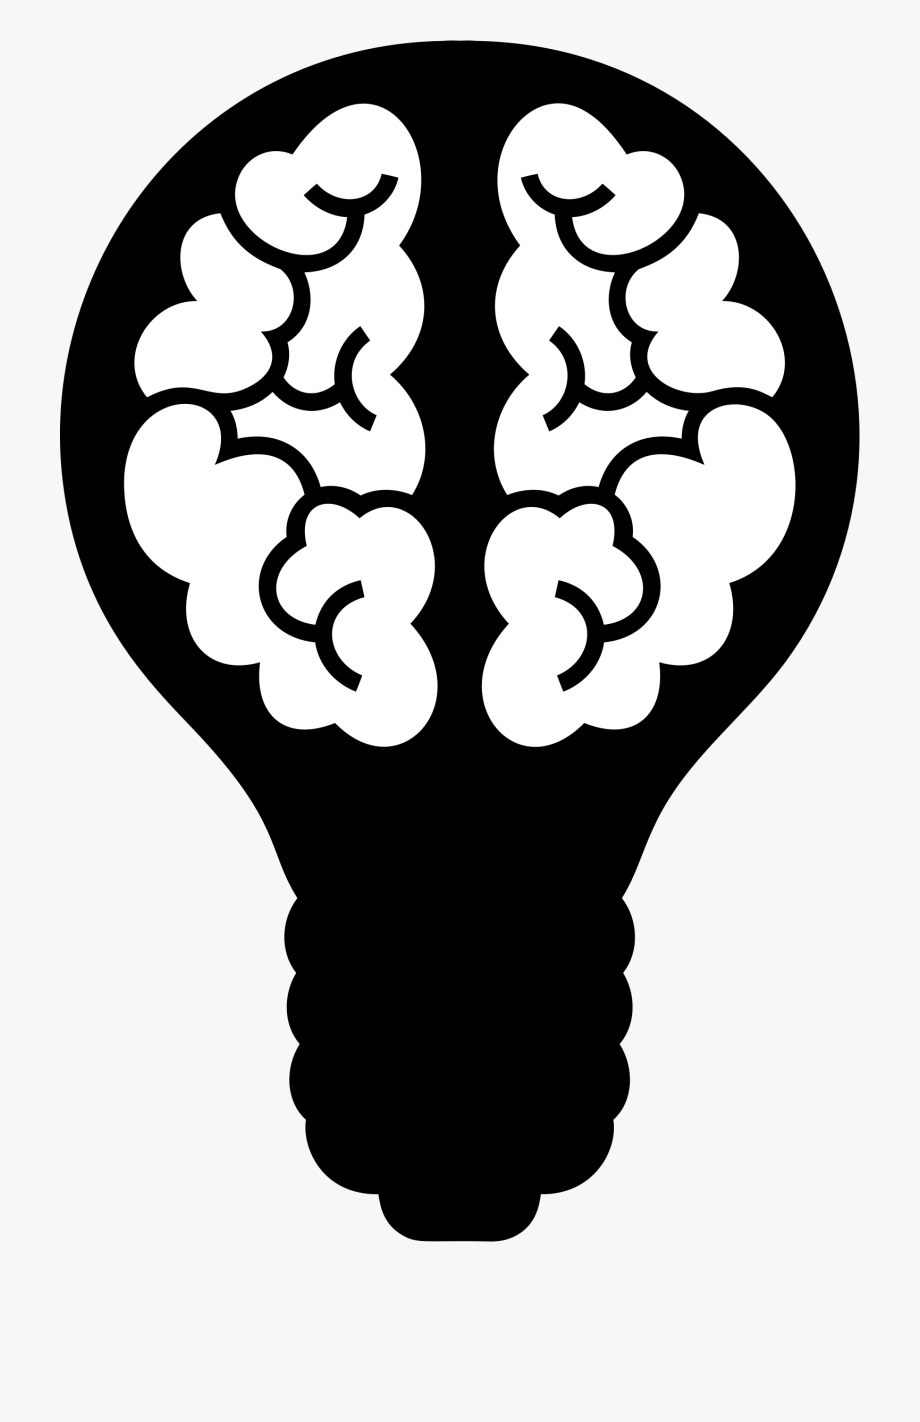 lightbulb clipart brain